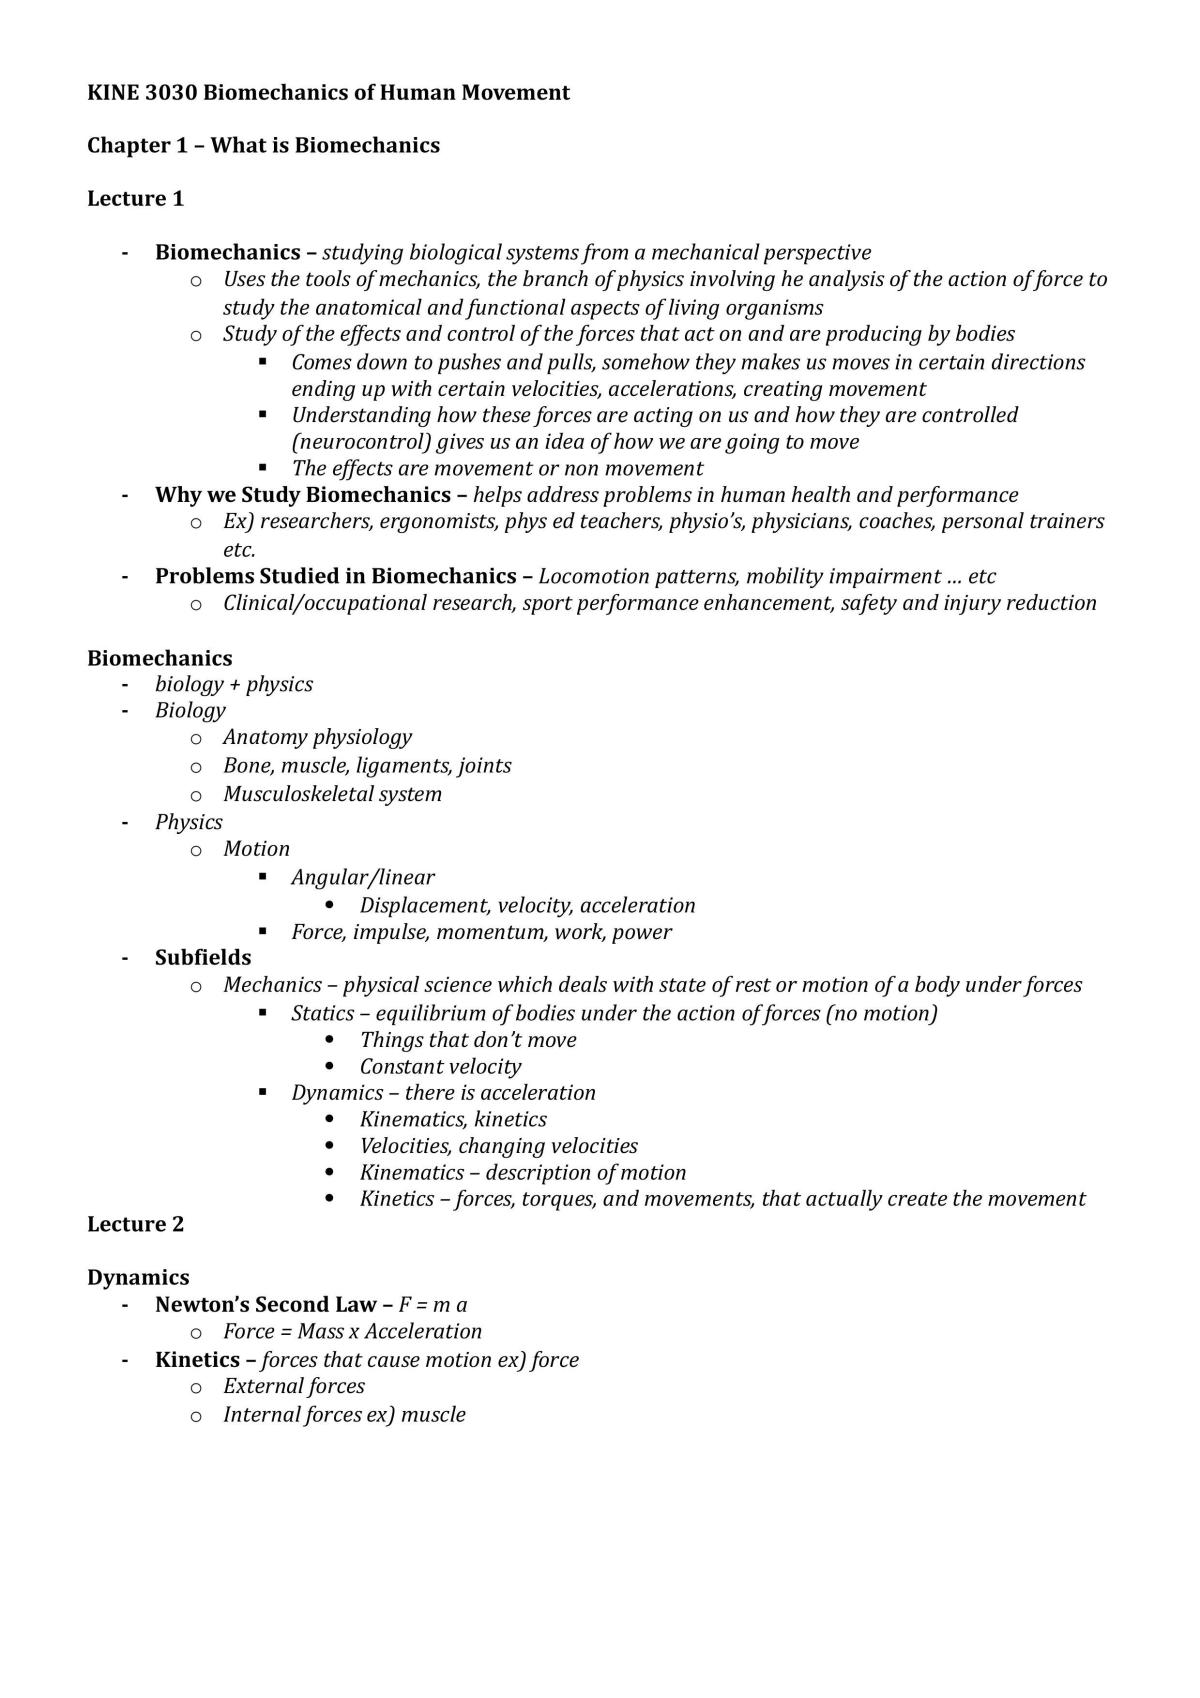 Biomechanics of Human Movement Study Notes - Page 1